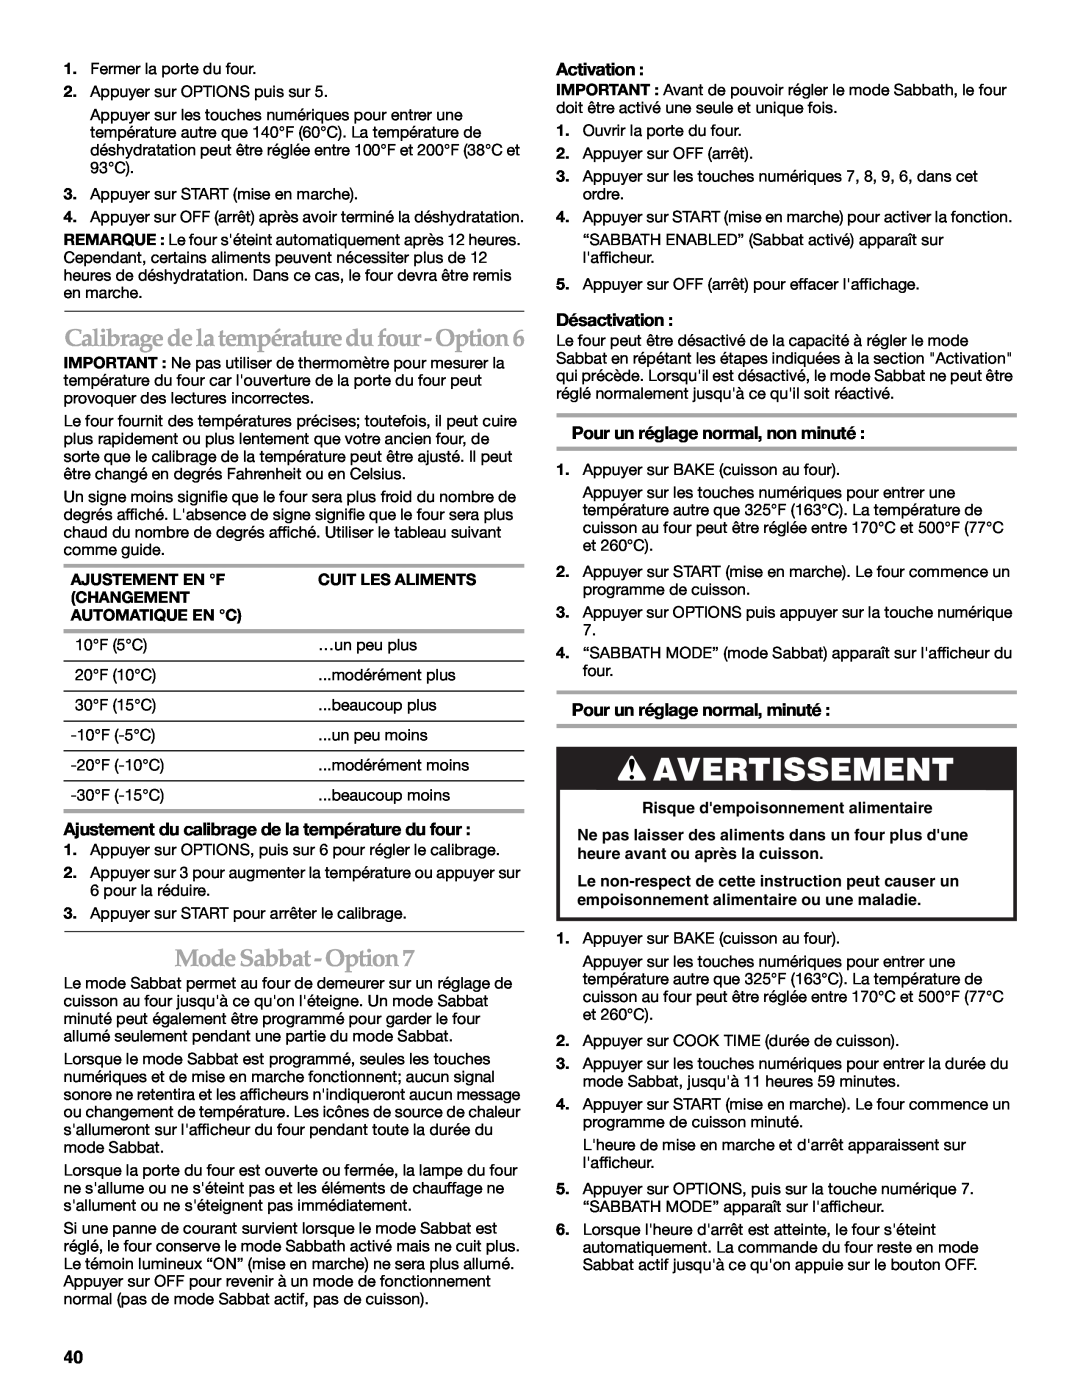 KitchenAid KDRS807 manual Mode Sabbat - Option, Calibrage de la température du four -Option, Avertissement, Activation 